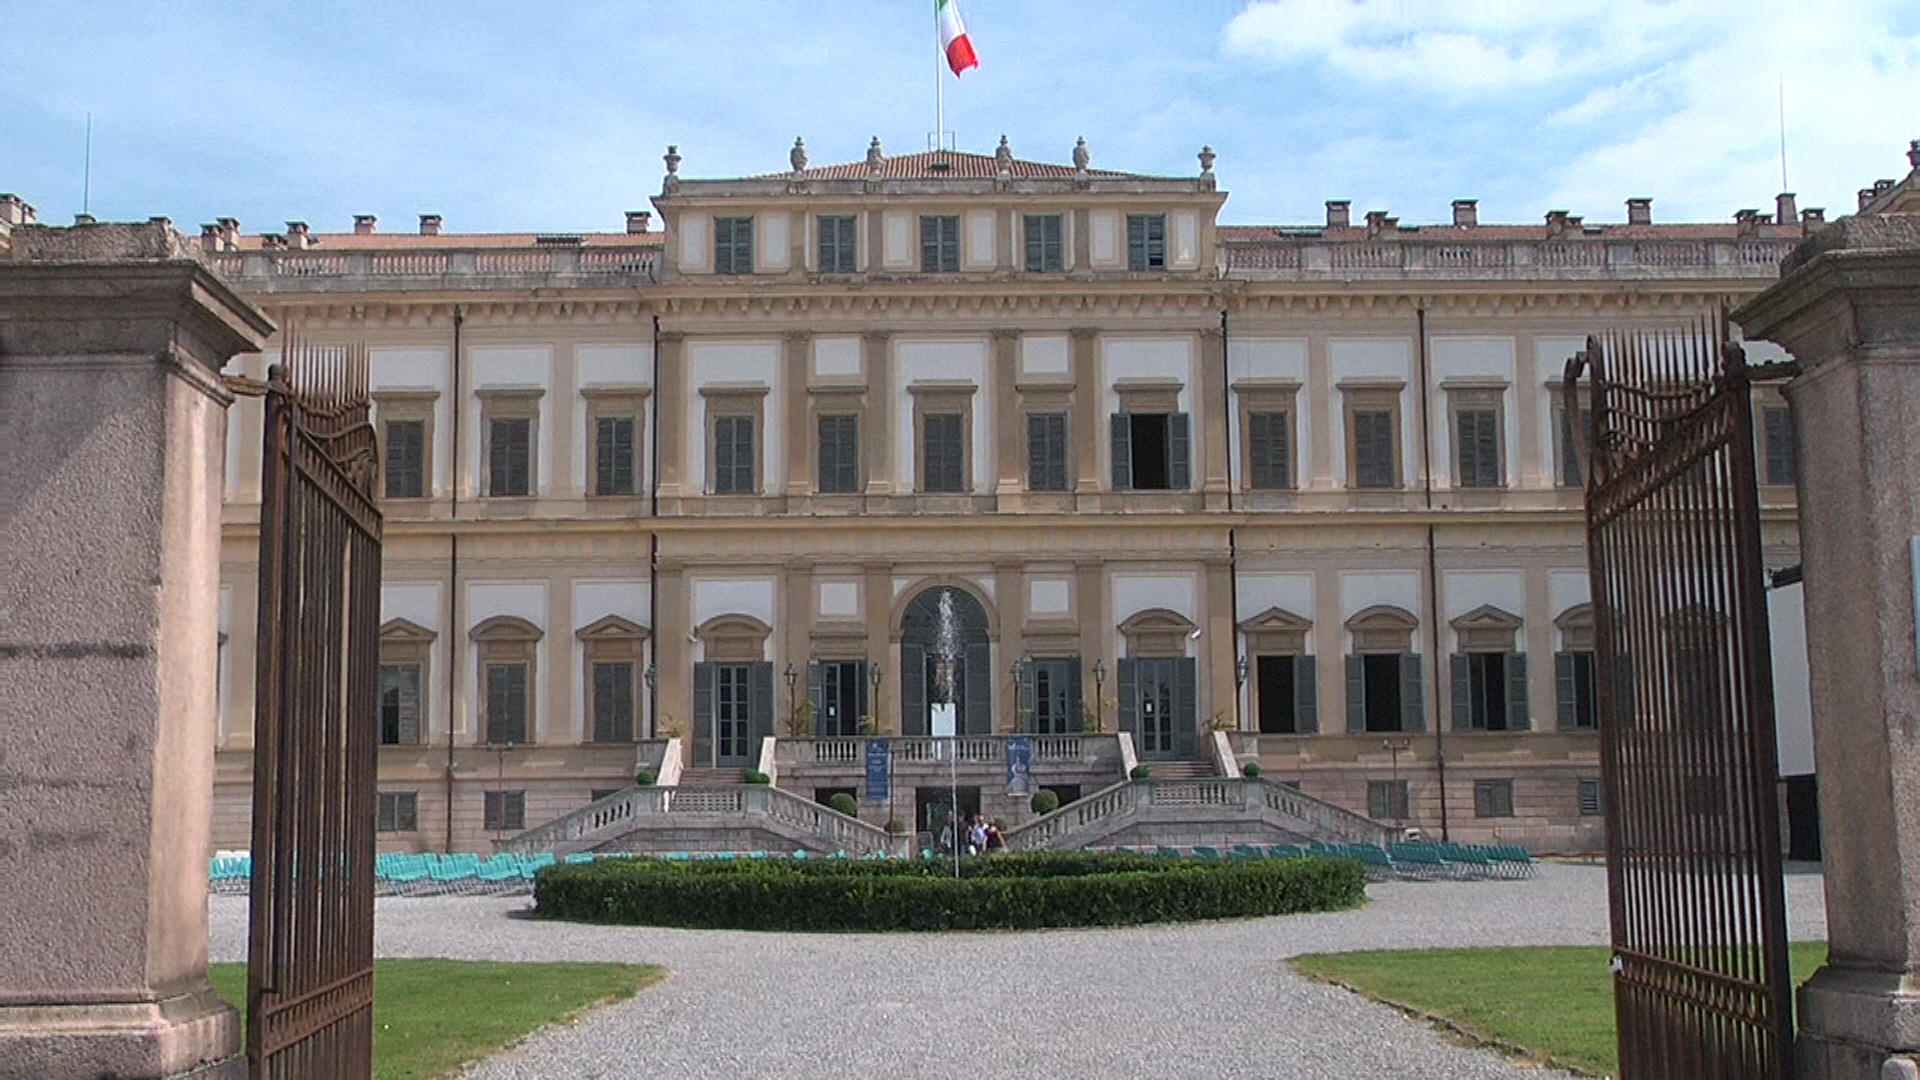 Villa Reale Monza